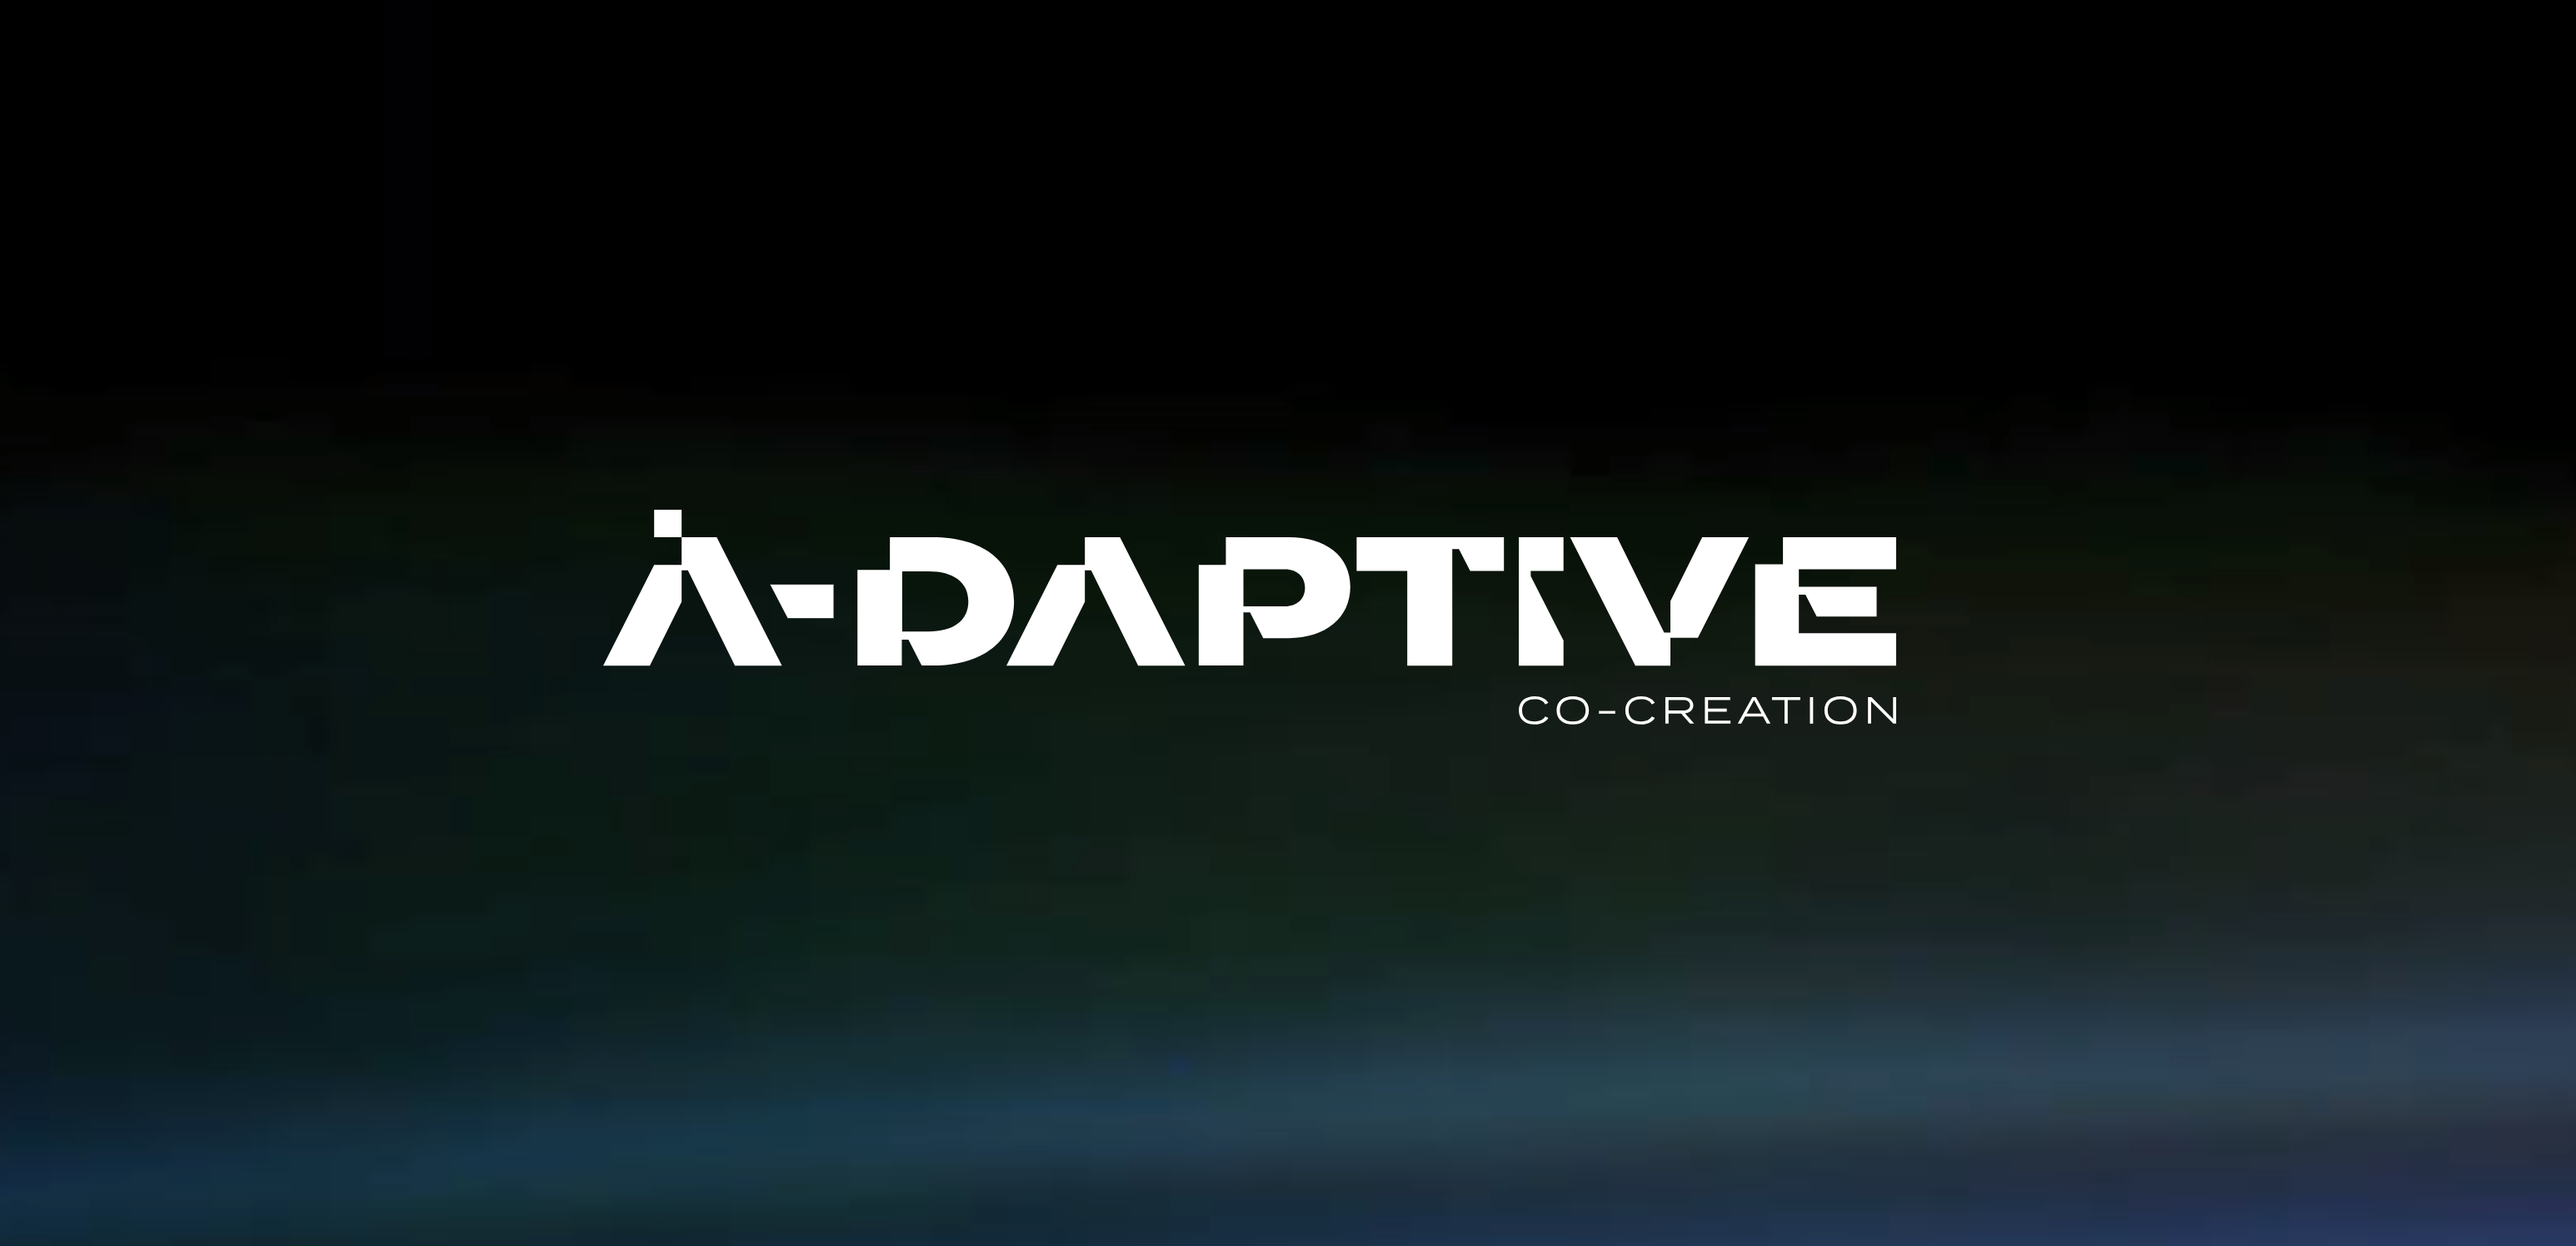 (c) A-daptive.com